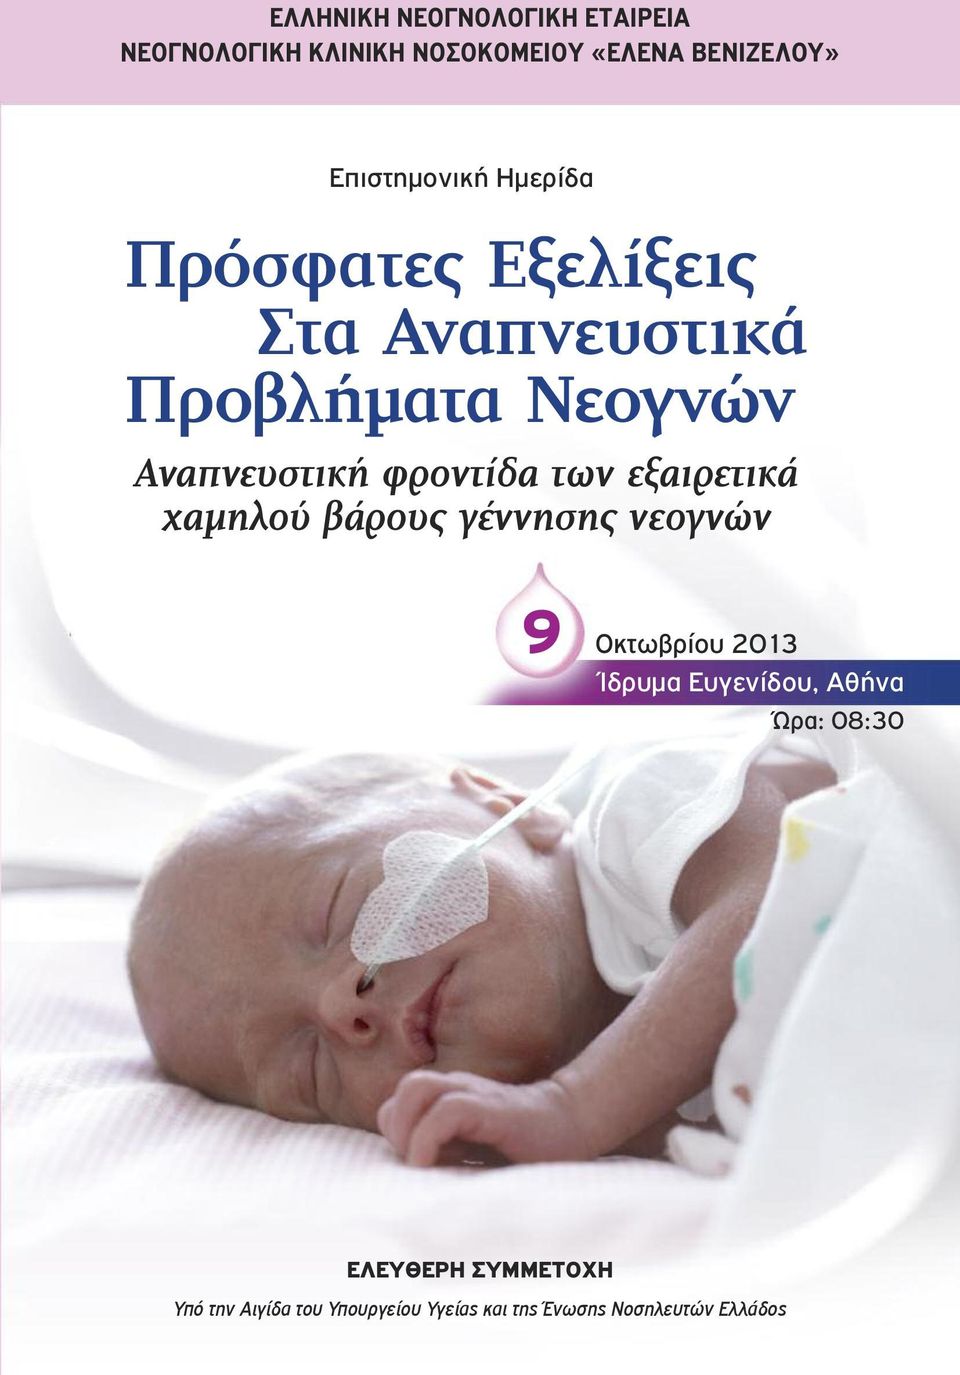 φροντίδα των εξαιρετικά χαμηλού βάρους γέννησης νεογνών 9 Οκτωβρίου 2013 Ίδρυμα Ευγενίδου,